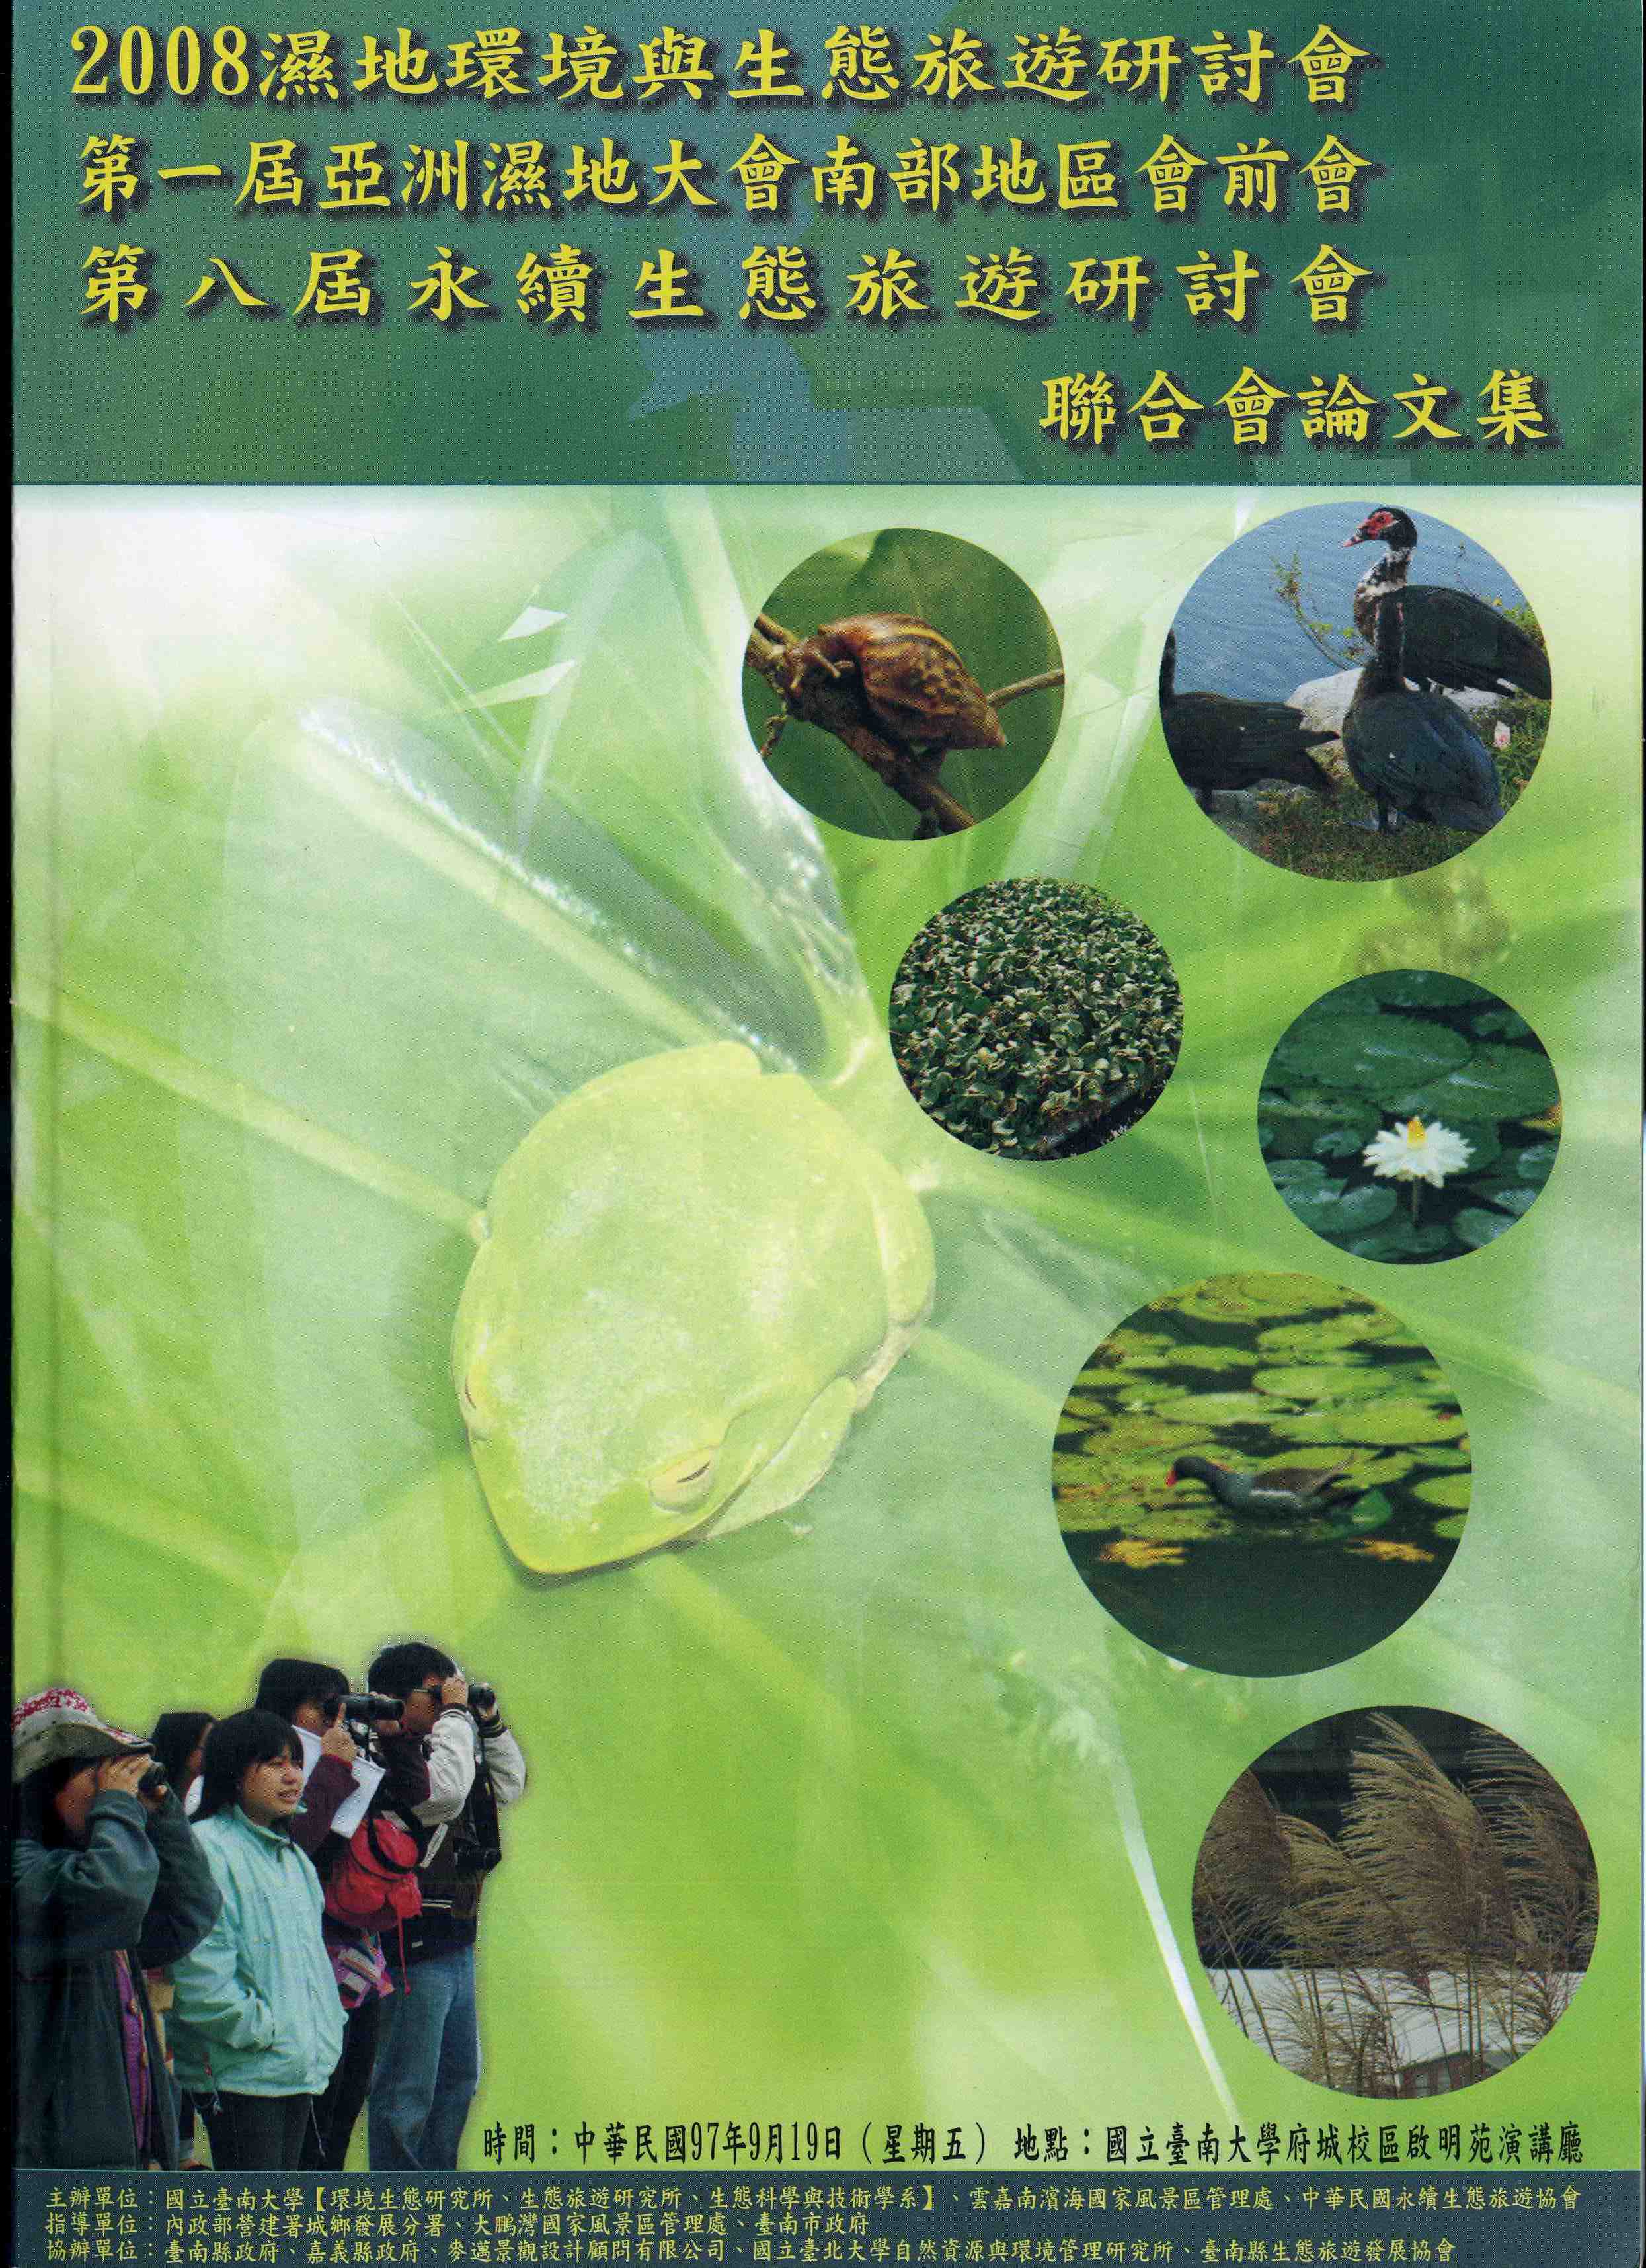 2008濕地環境與生態旅遊研討會  第一屆亞洲濕地大會南部地區會前會  第八屆永續生態旅遊研討會 聯合會 論文集